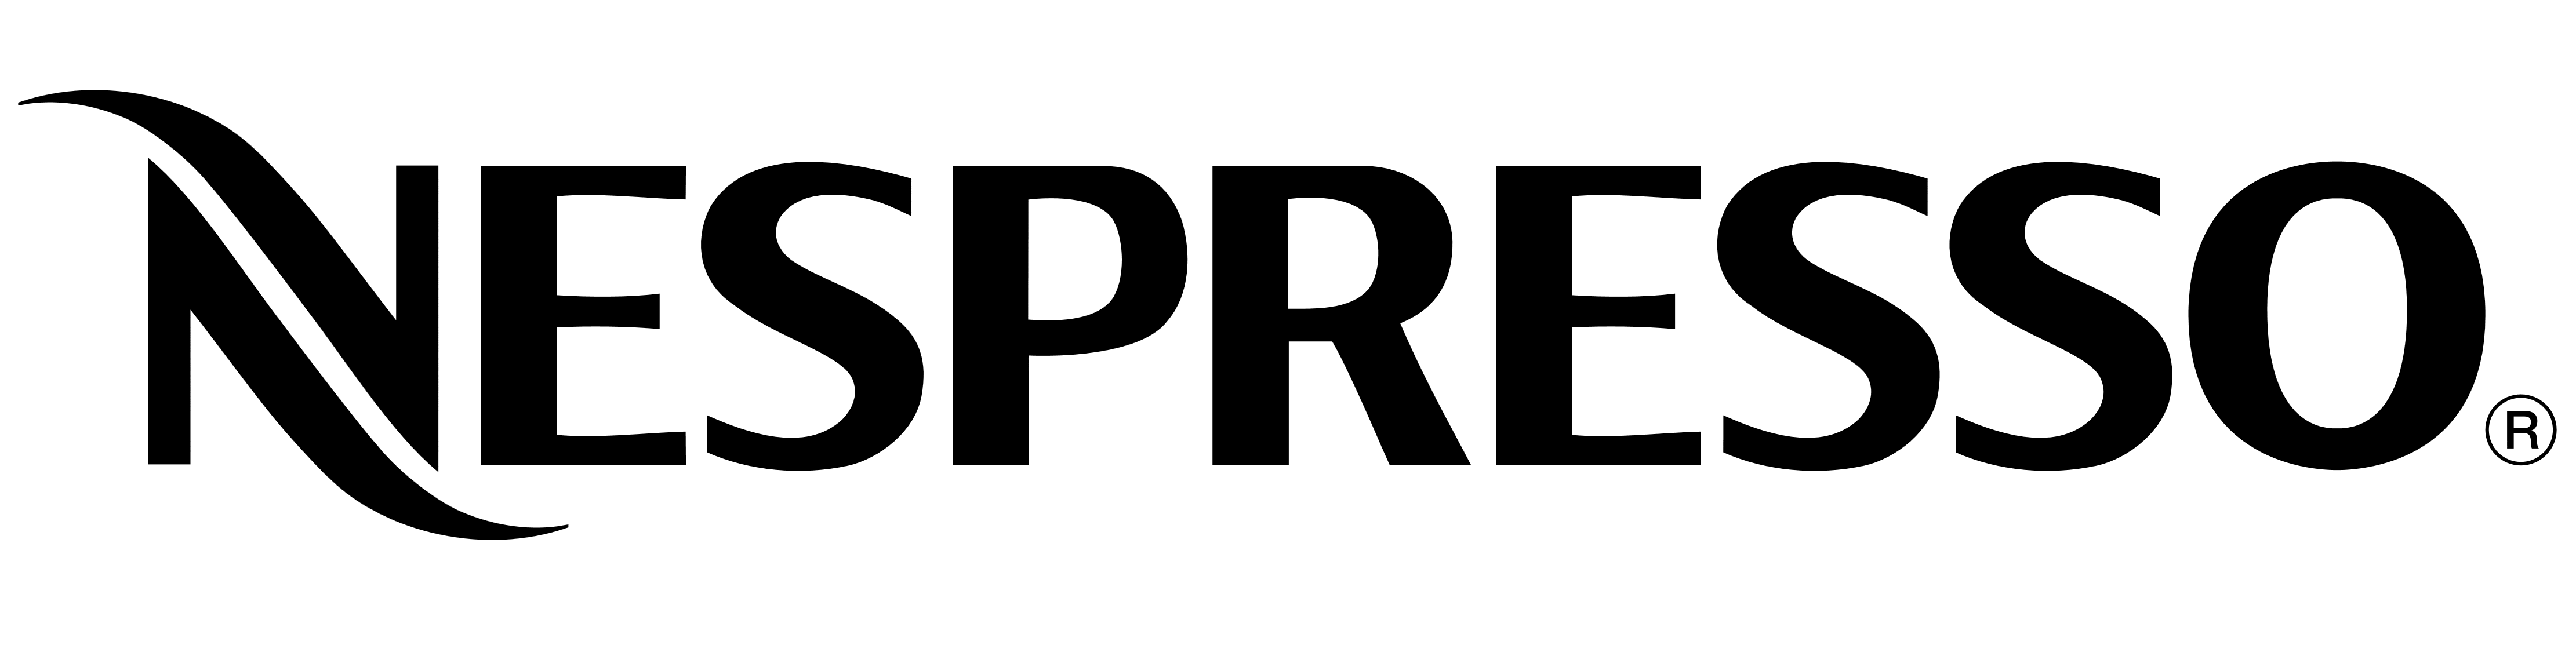 Nepresso logo